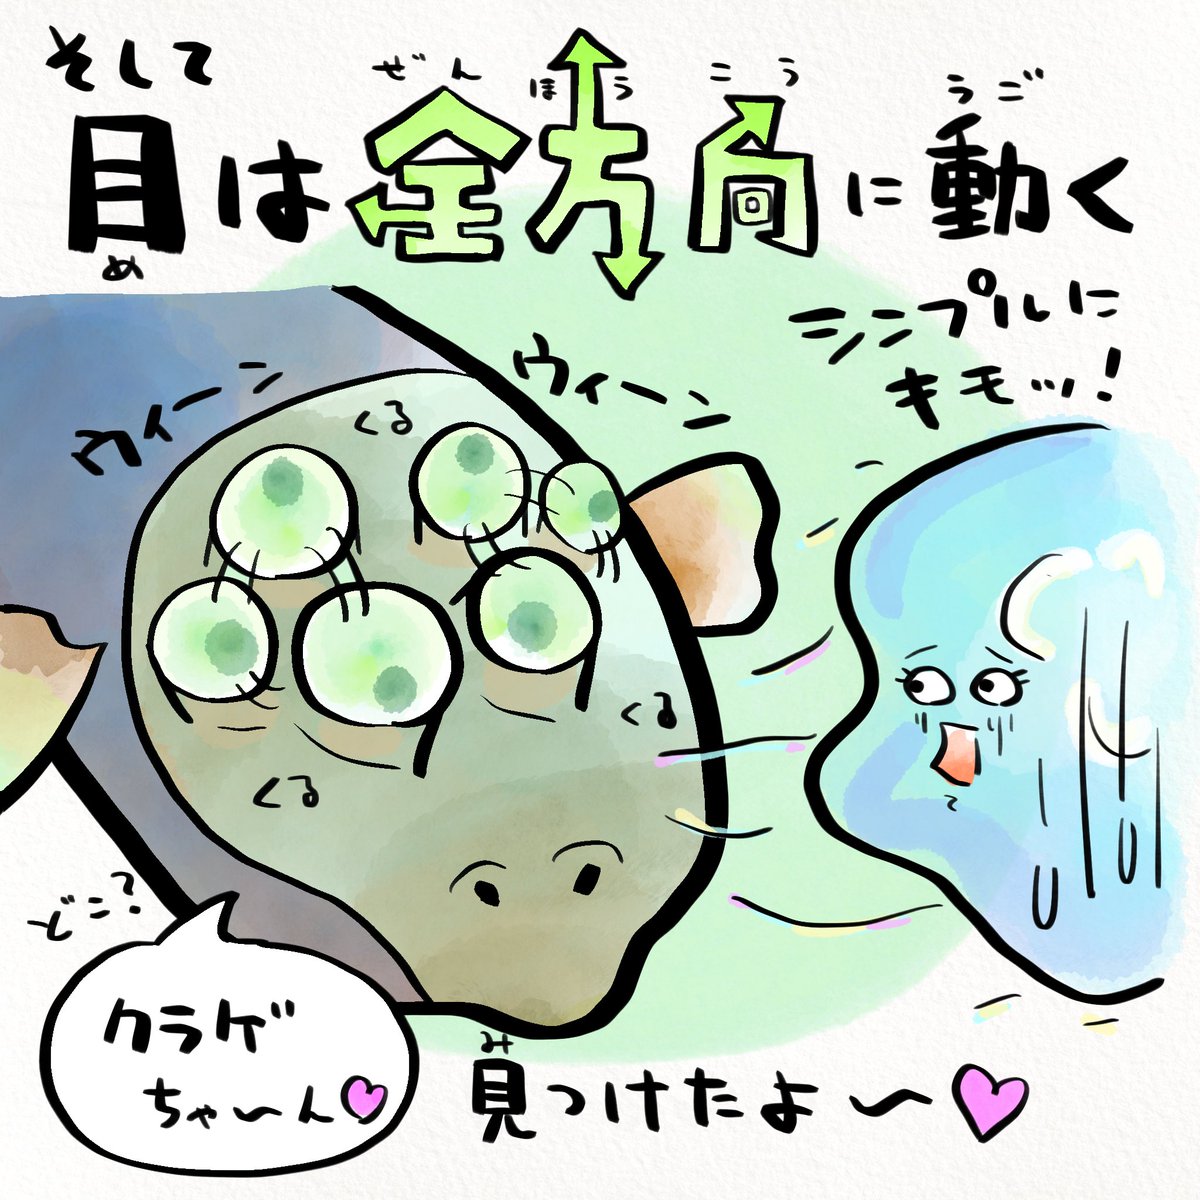 デメニギスは大好きなクラゲに刺されないよう目を透明なドームに入れて守ってる